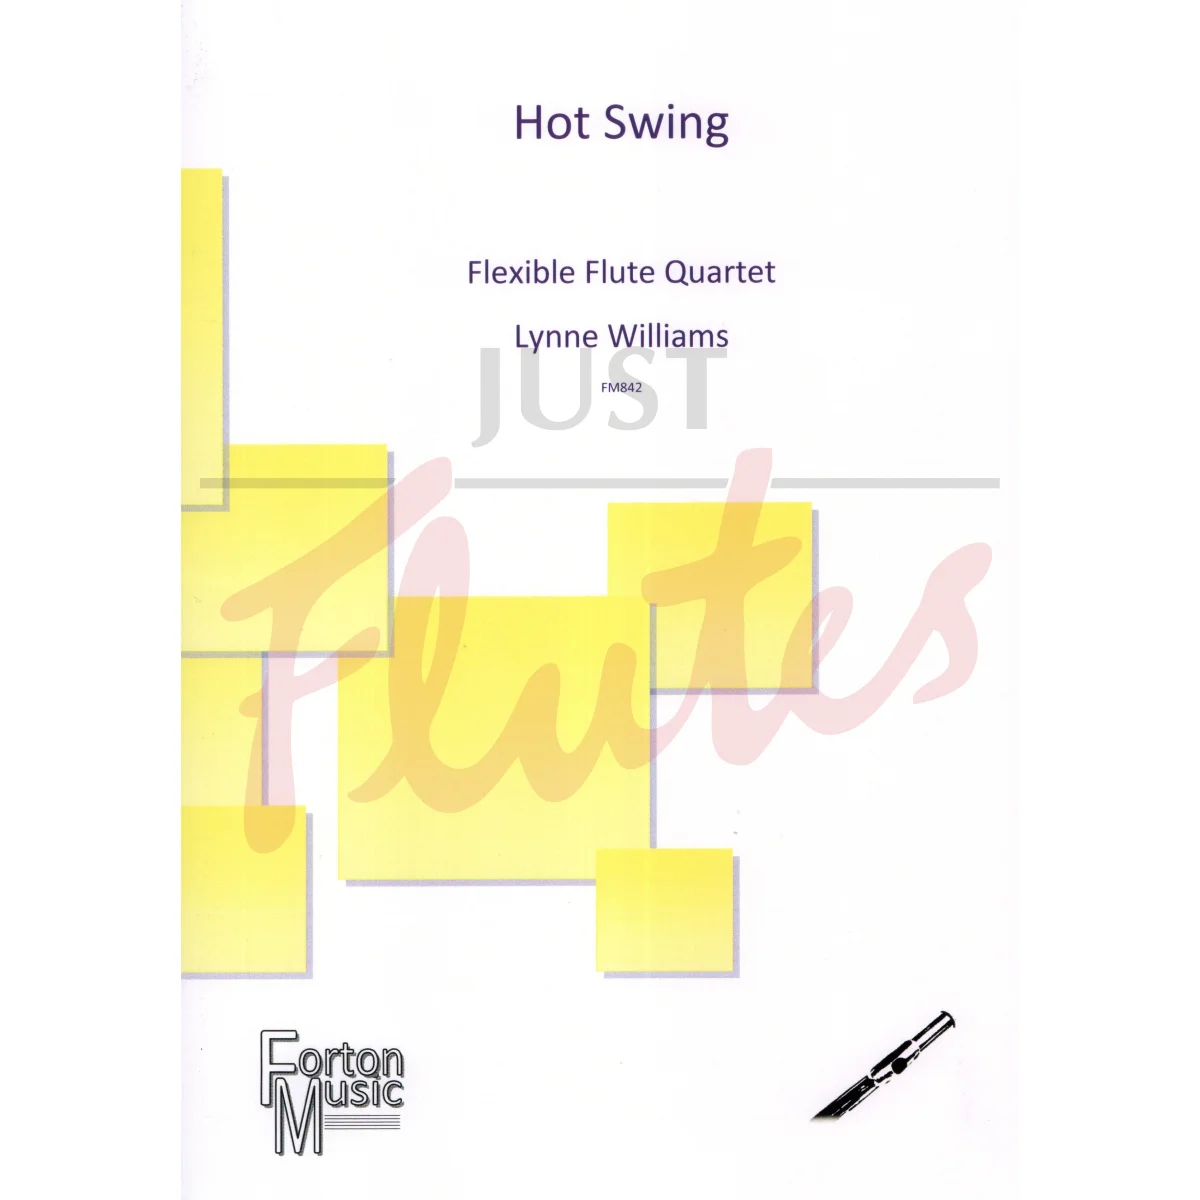 Hot Swing for Flexible Flute Quartet